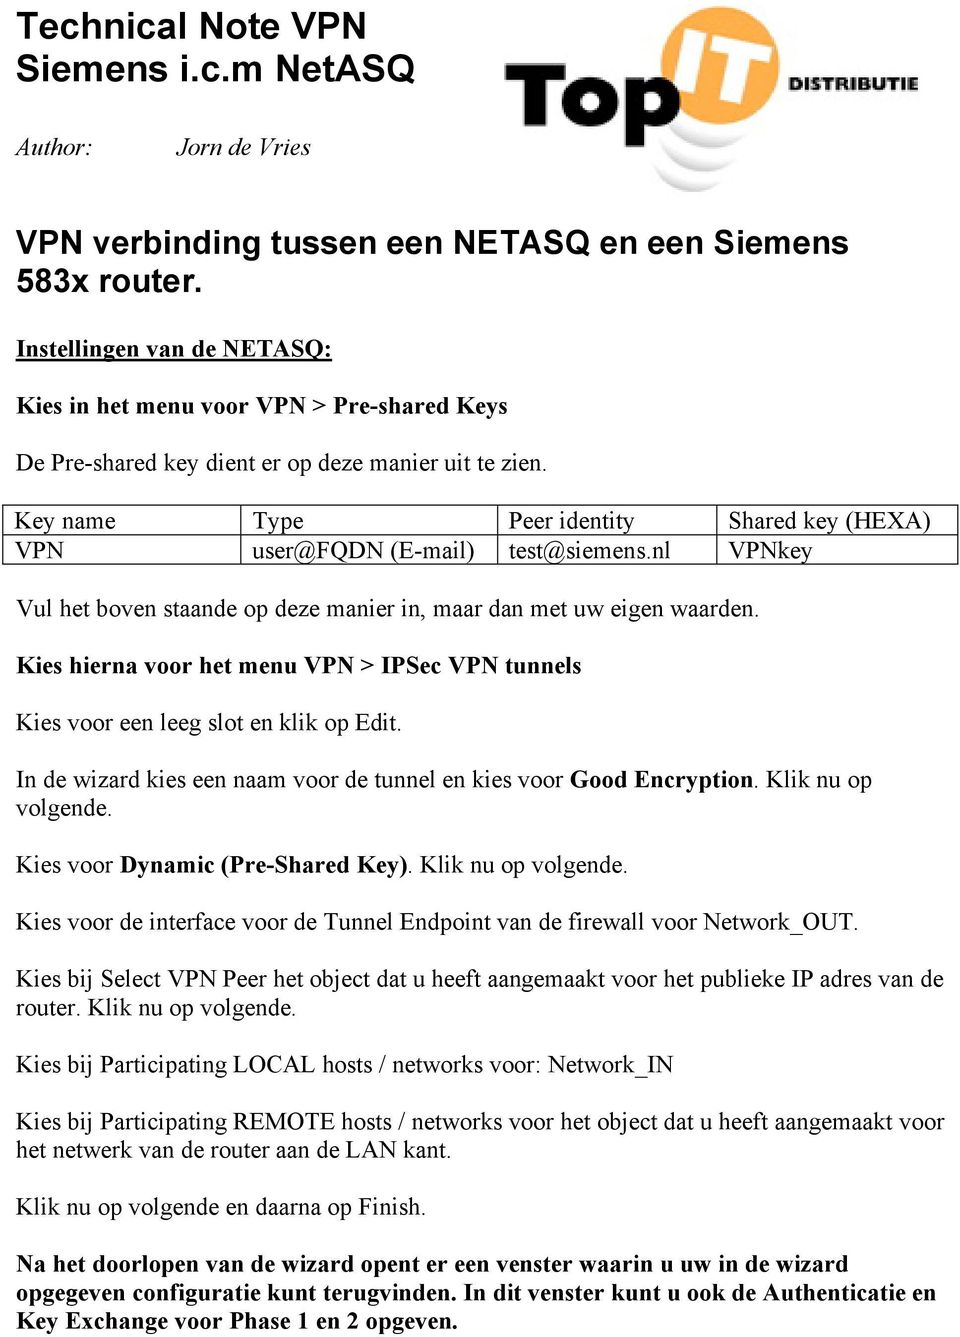 Key name Type Peer identity Shared key (HEXA) VPN user@fqdn (E-mail) test@siemens.nl VPNkey Vul het boven staande op deze manier in, maar dan met uw eigen waarden.